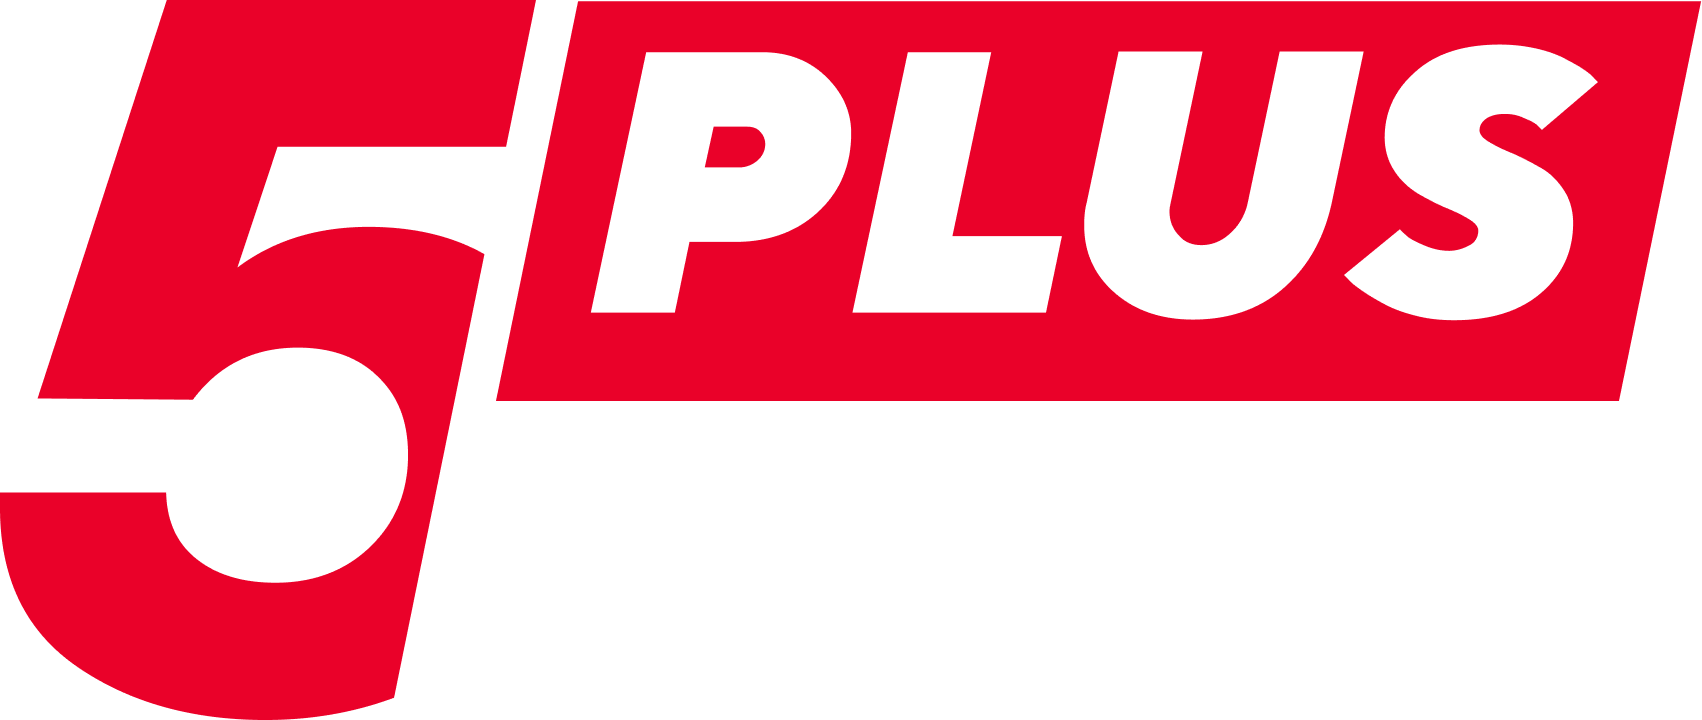 5Plus Bet Casino Logo